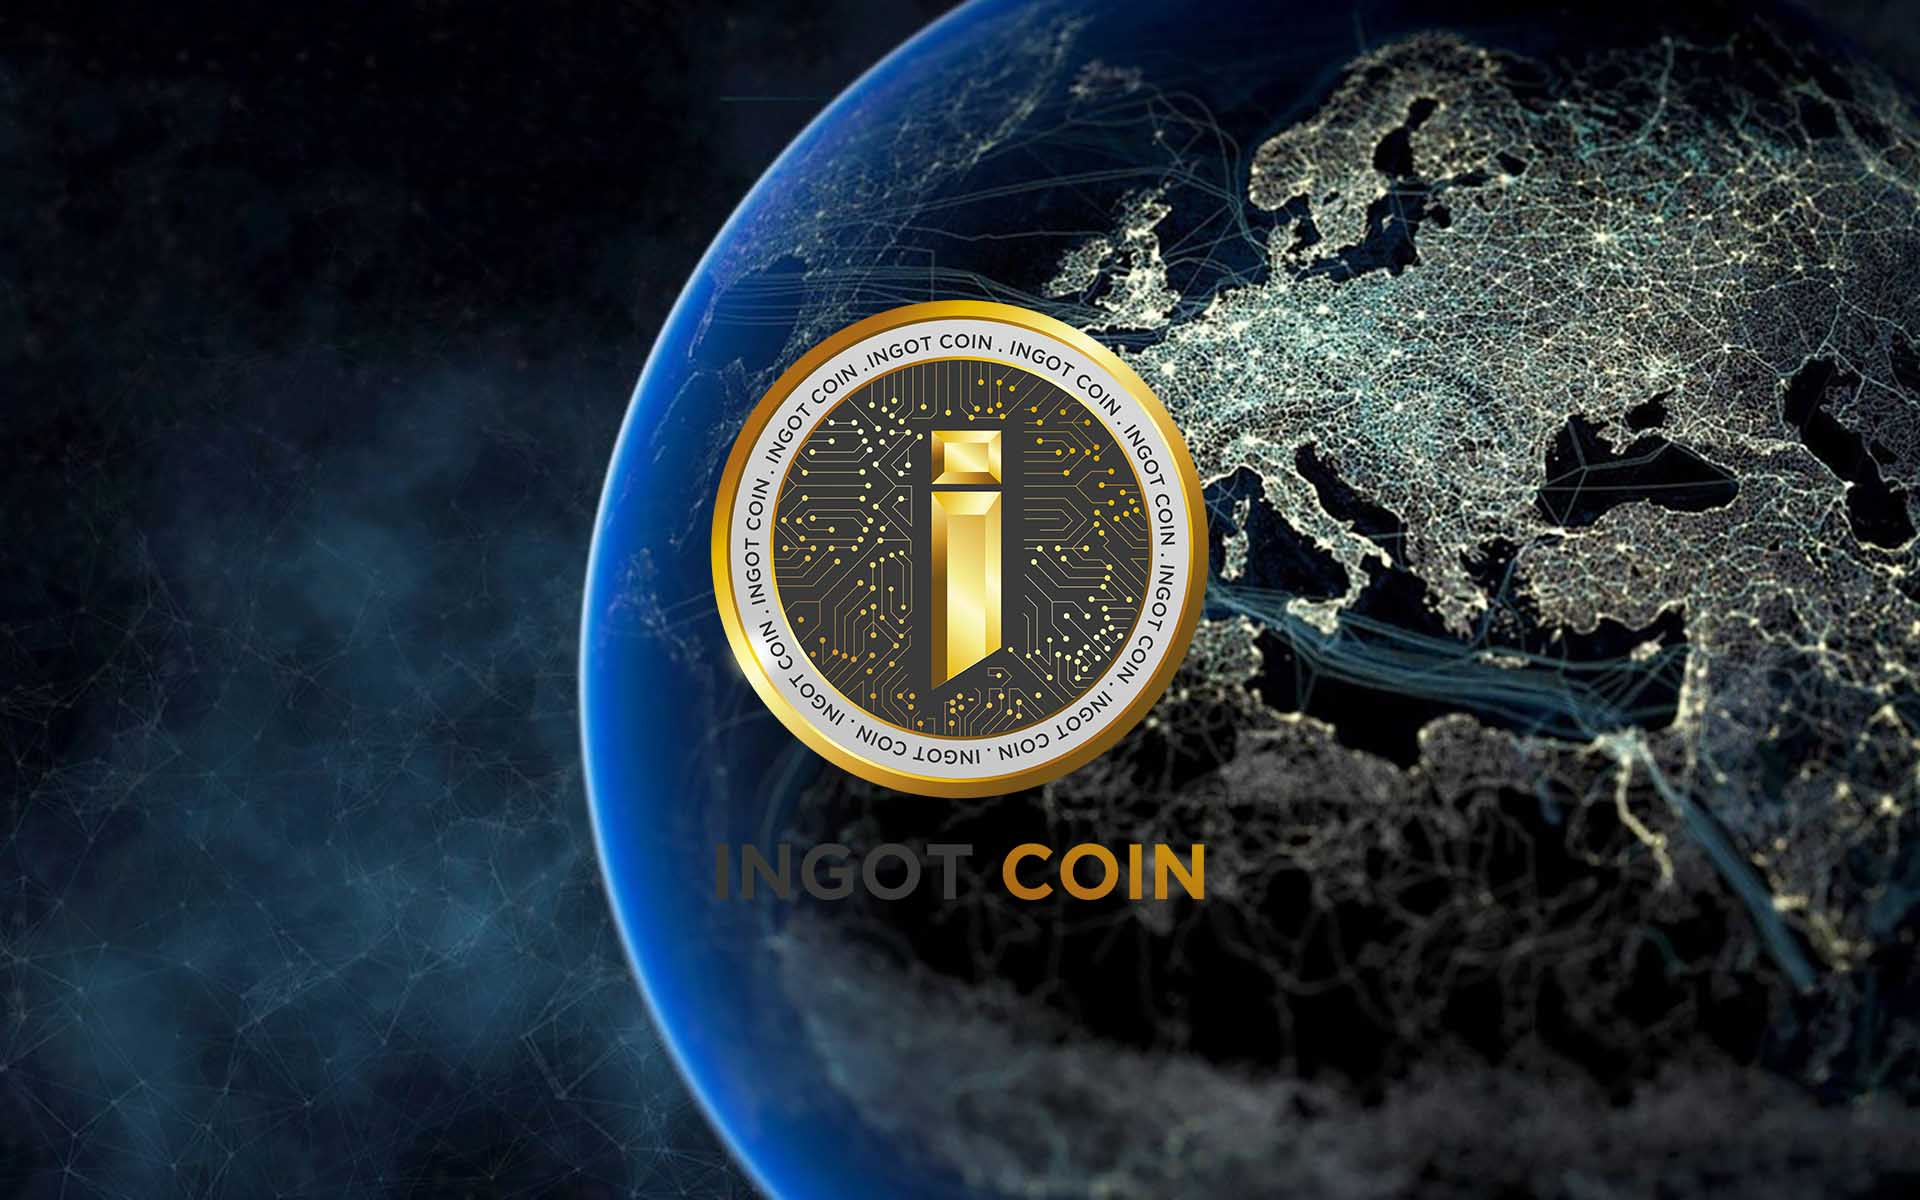 Hasil gambar untuk ingot coin